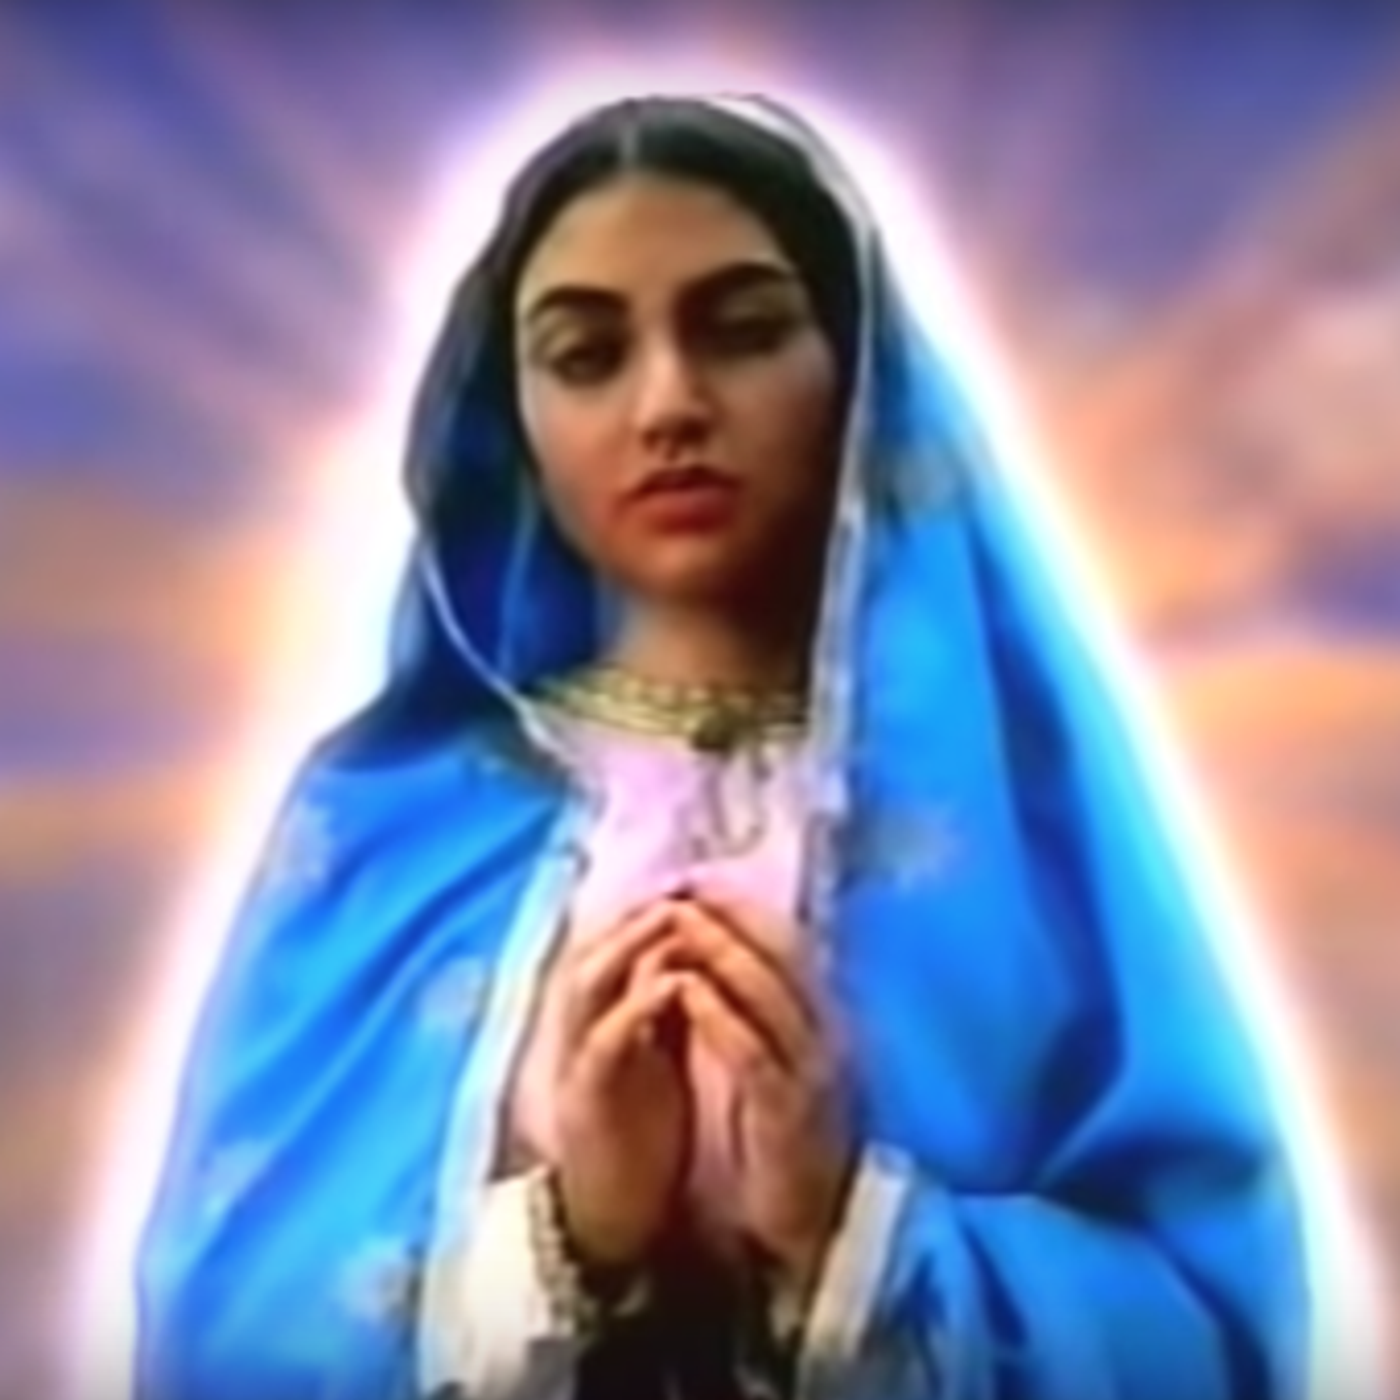 Thumbnail for "Episode 103: La Virgen de Guadalupe".